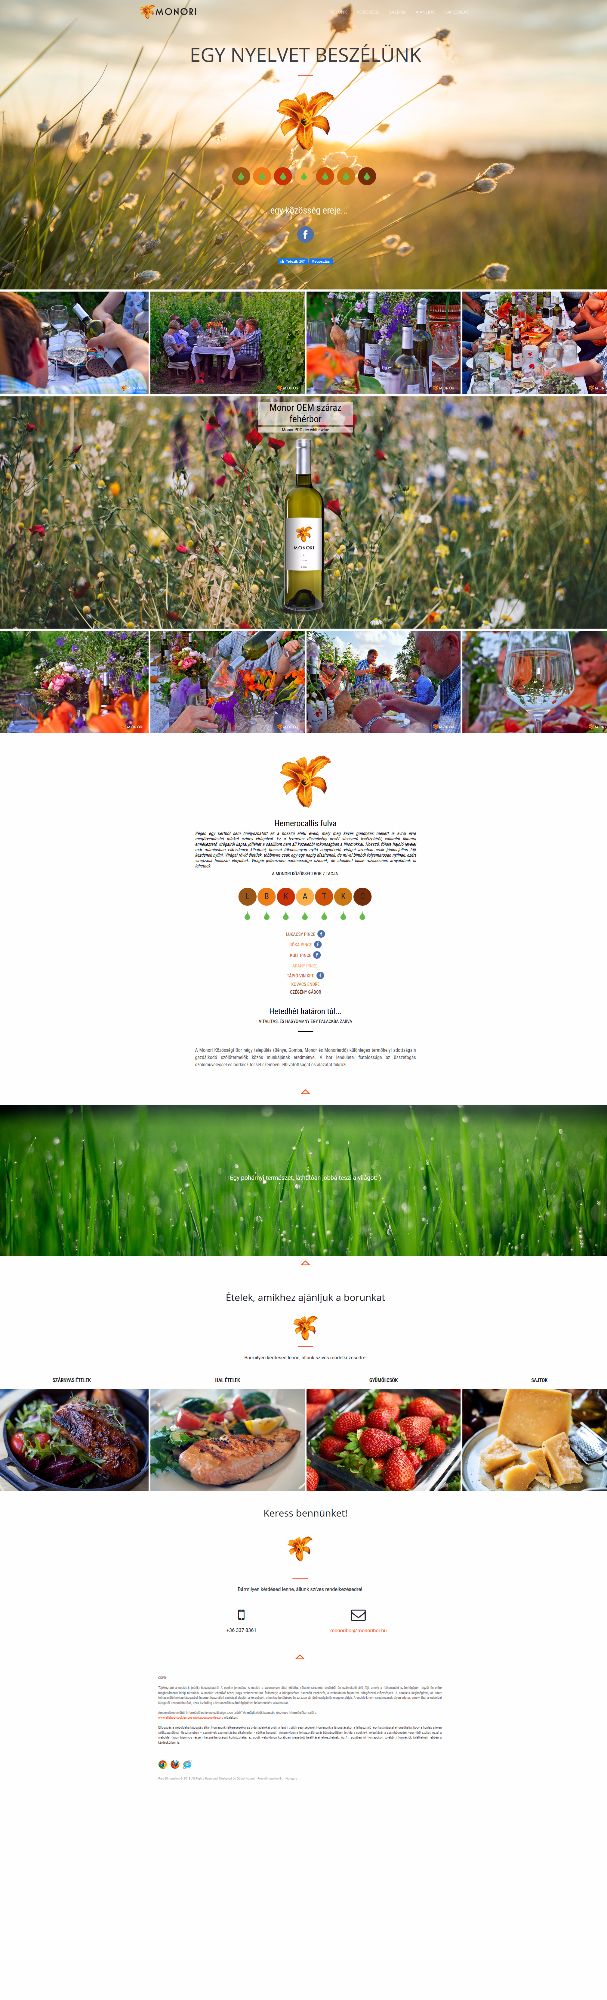 borászati weboldal dizájn